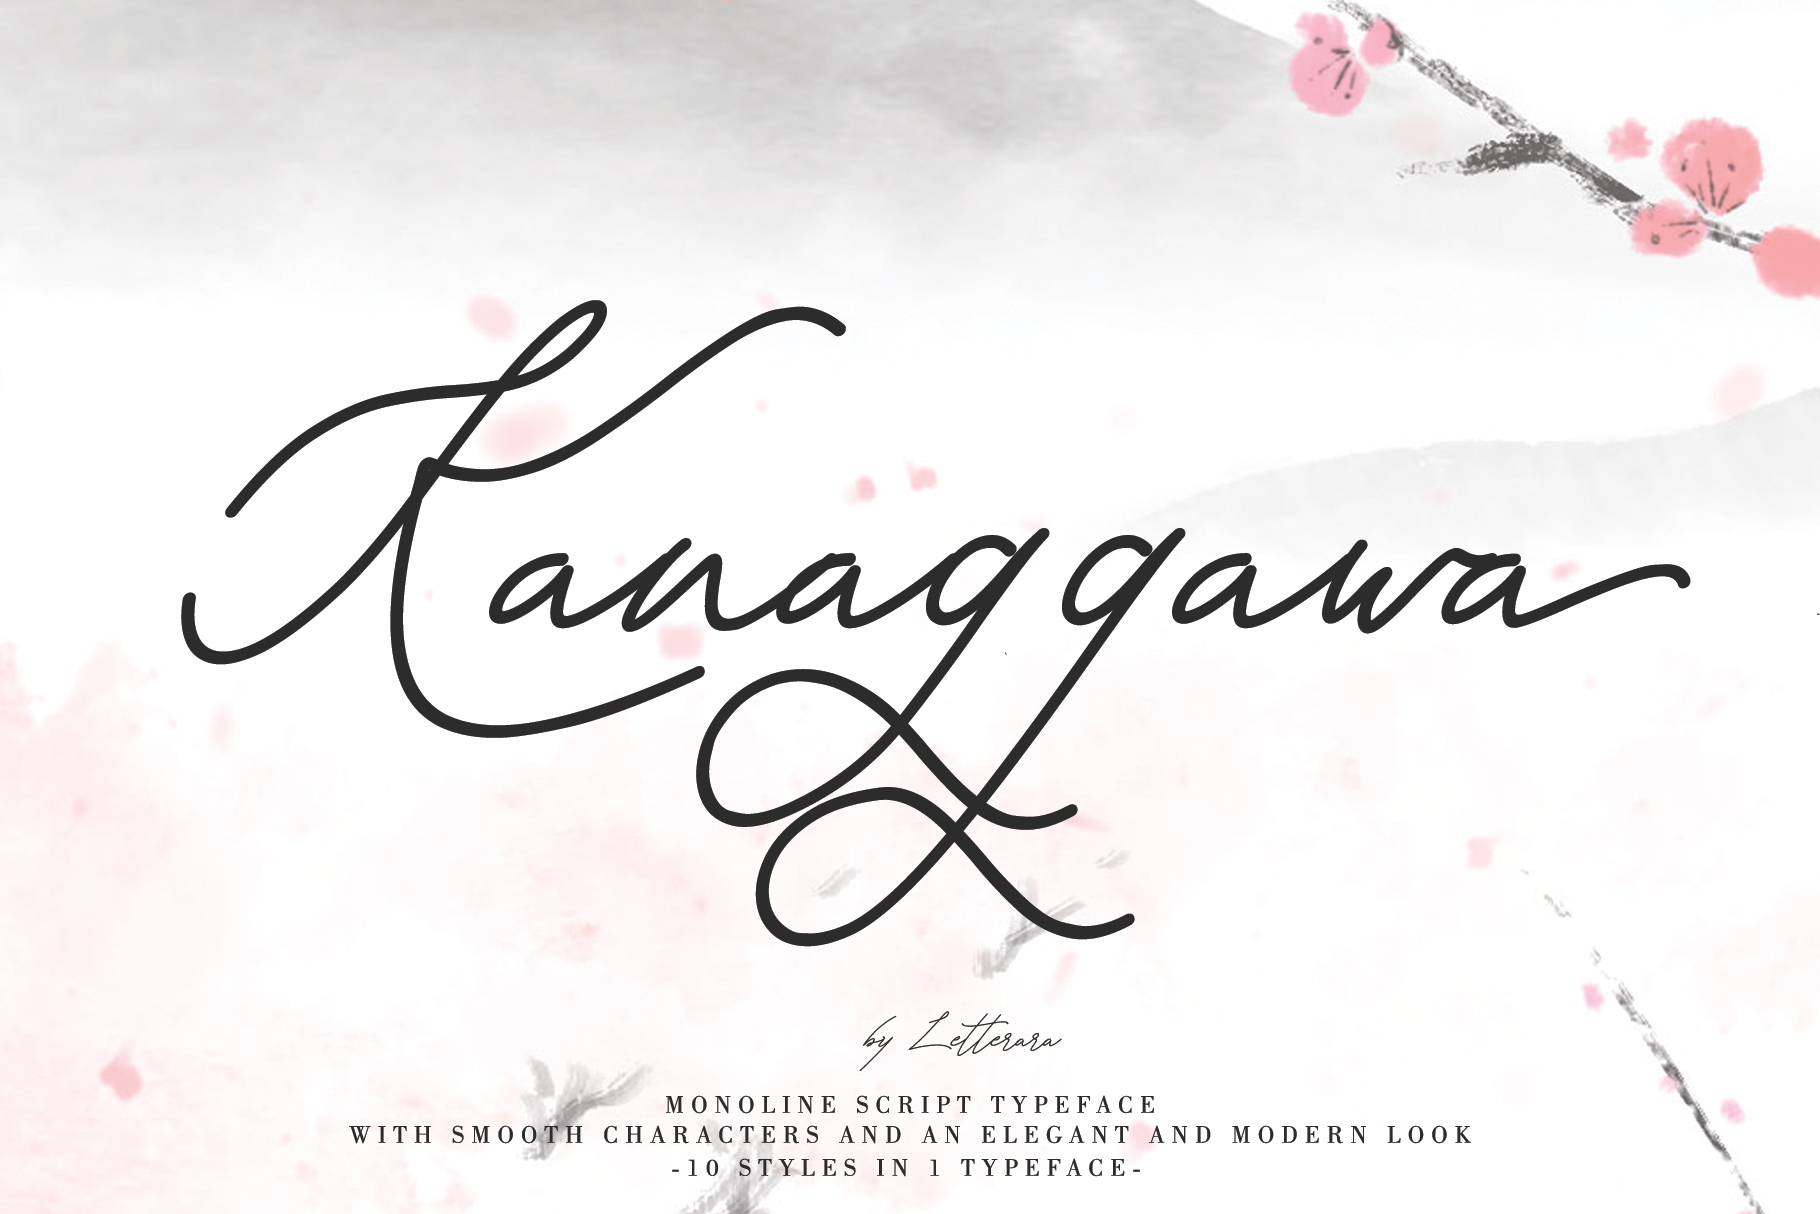 Kanaggawa